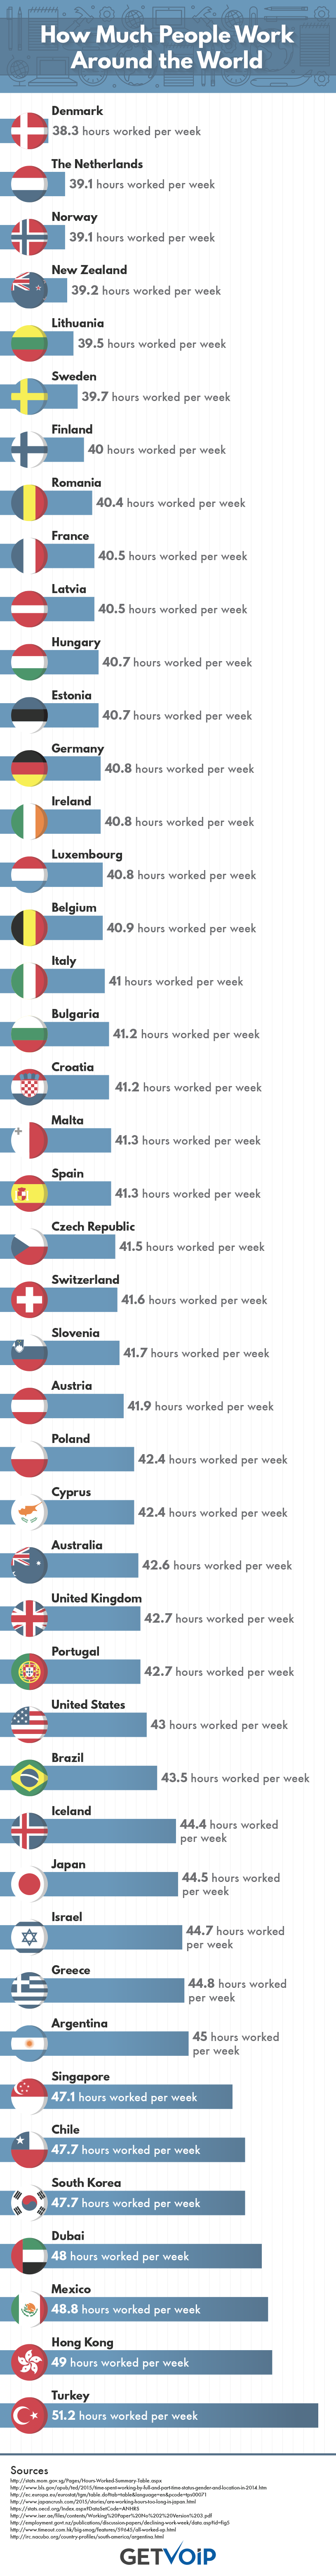 ¿Cuántas horas trabajan en Finlandia